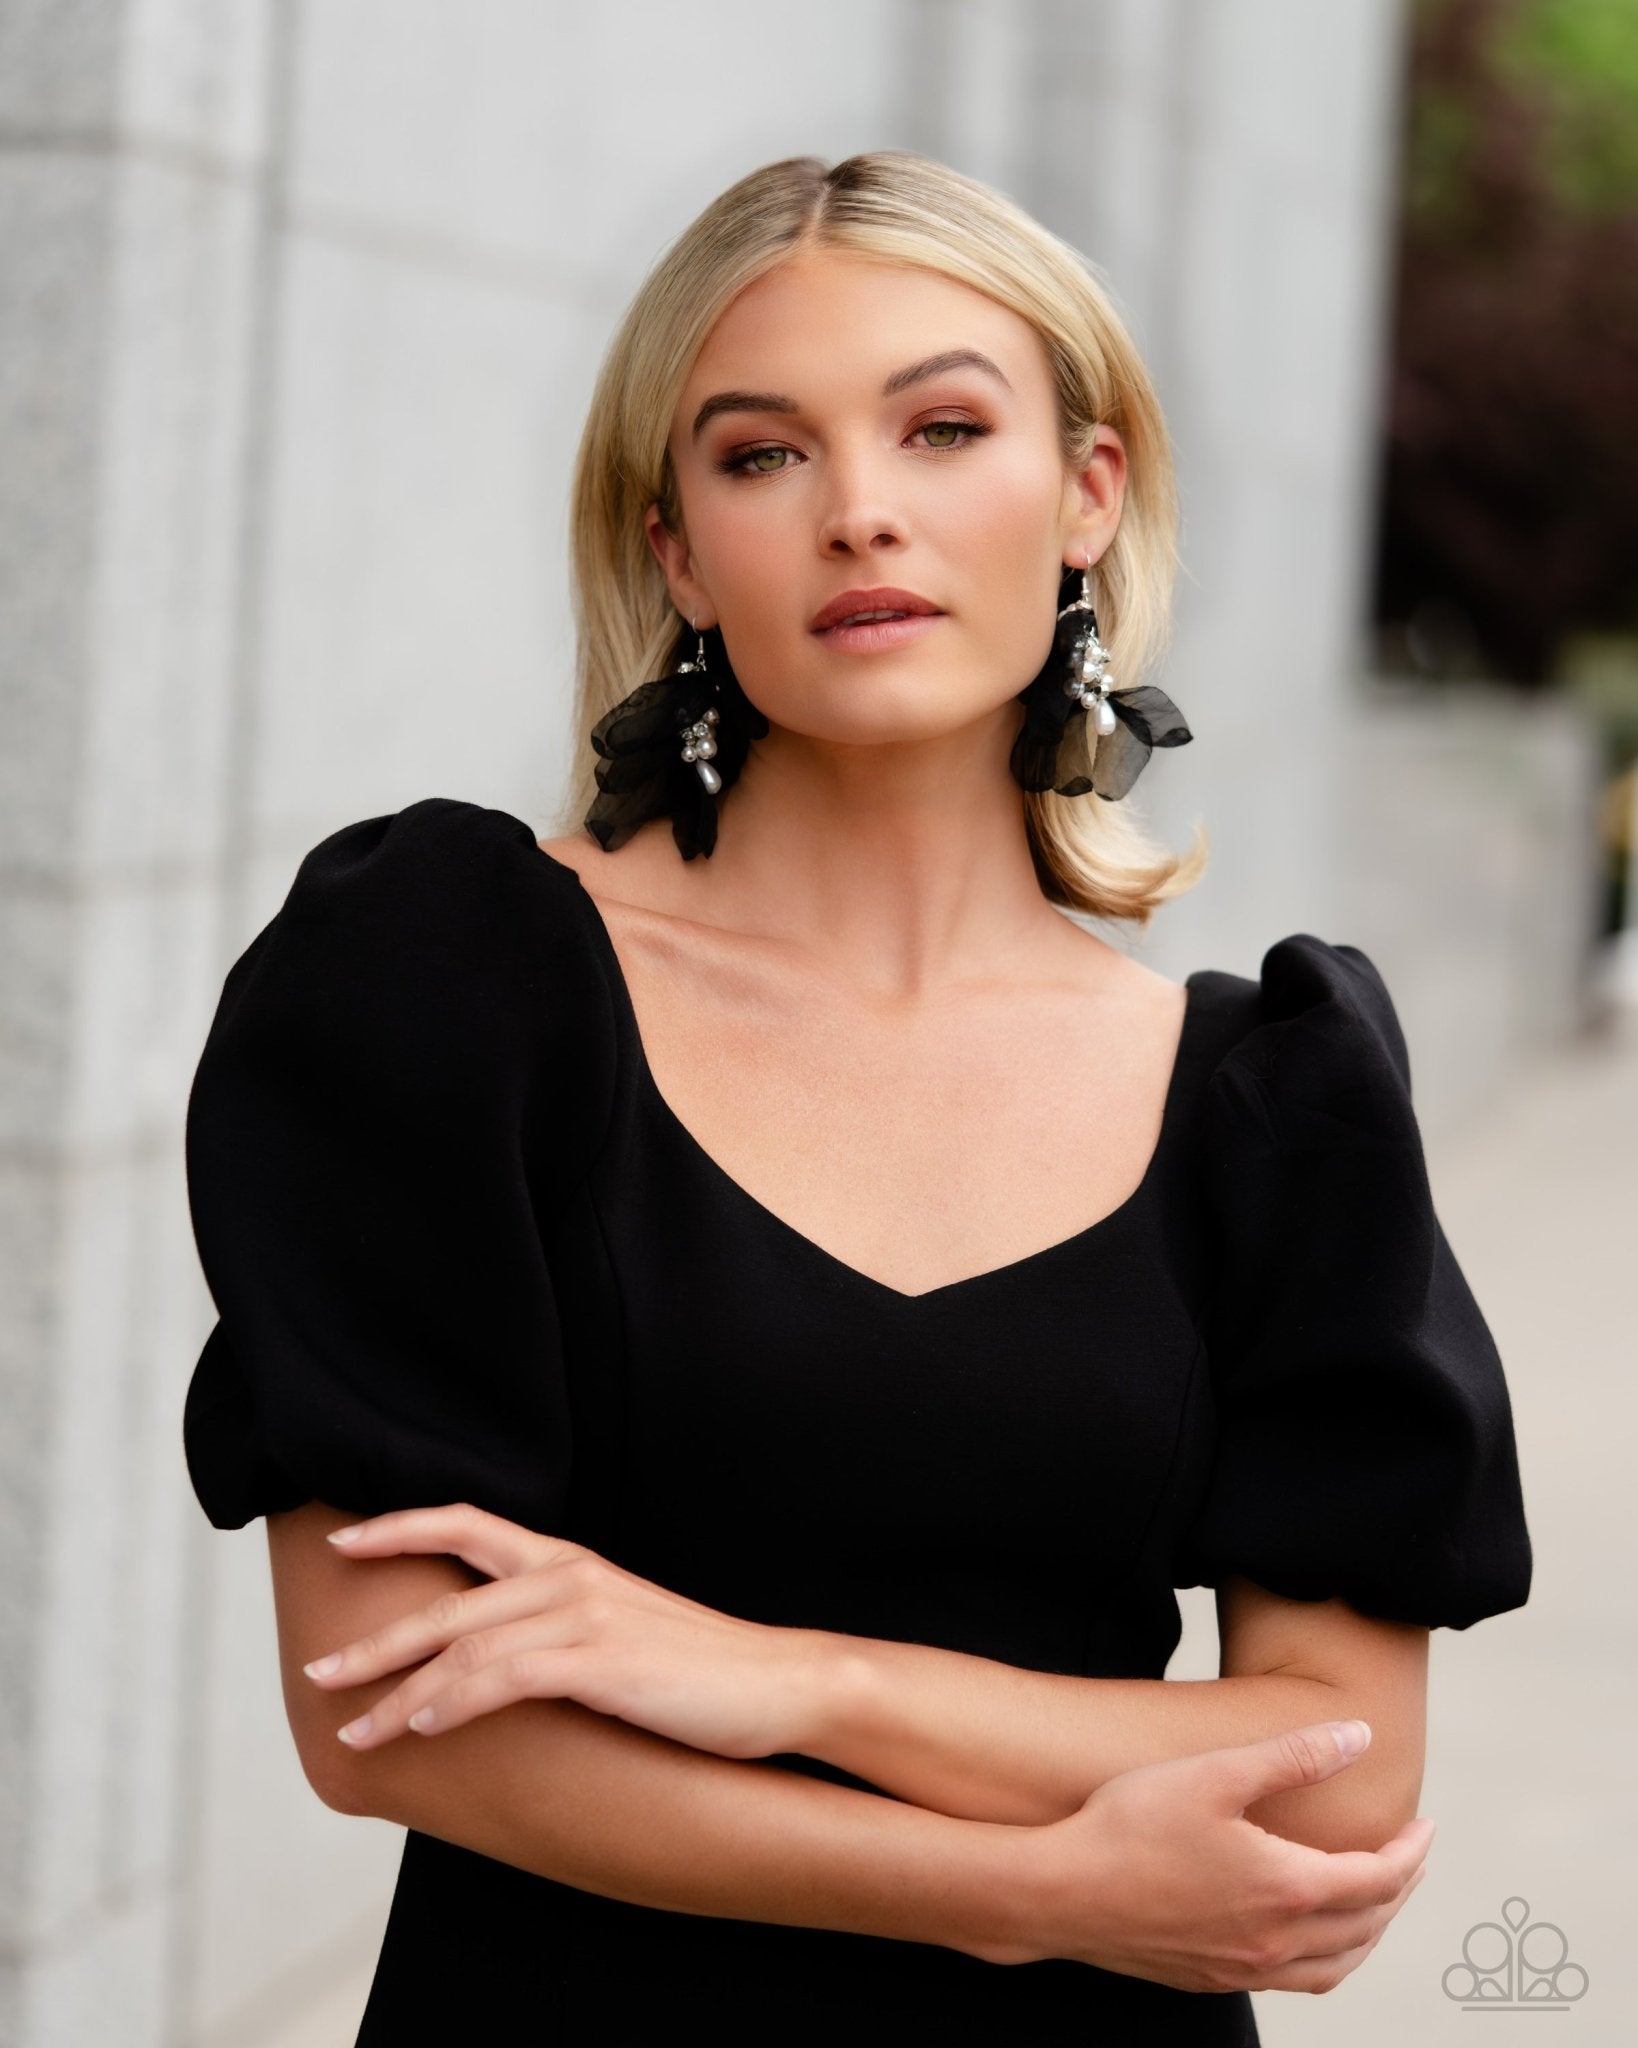 Jewelry ideas for black dress - How to wear - Malka Jewelry